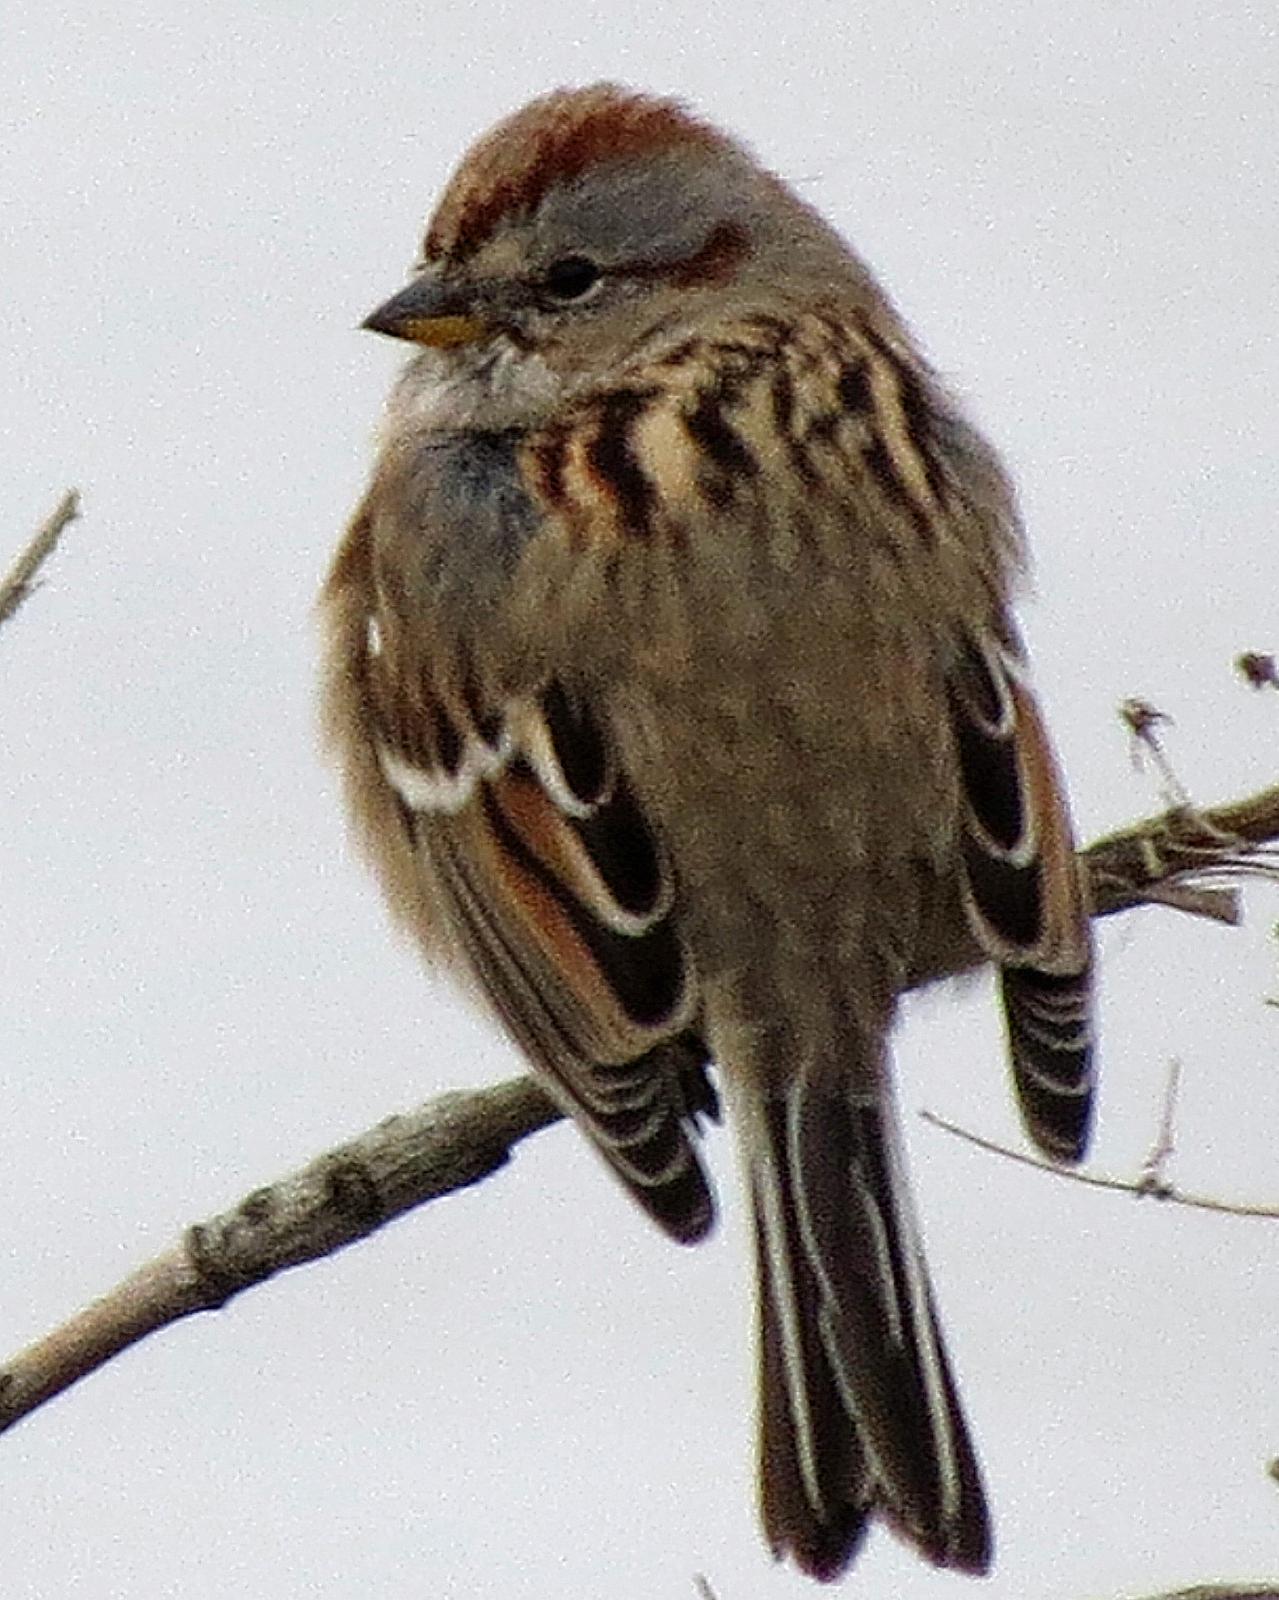 American Tree Sparrow Photo by Kelly Preheim